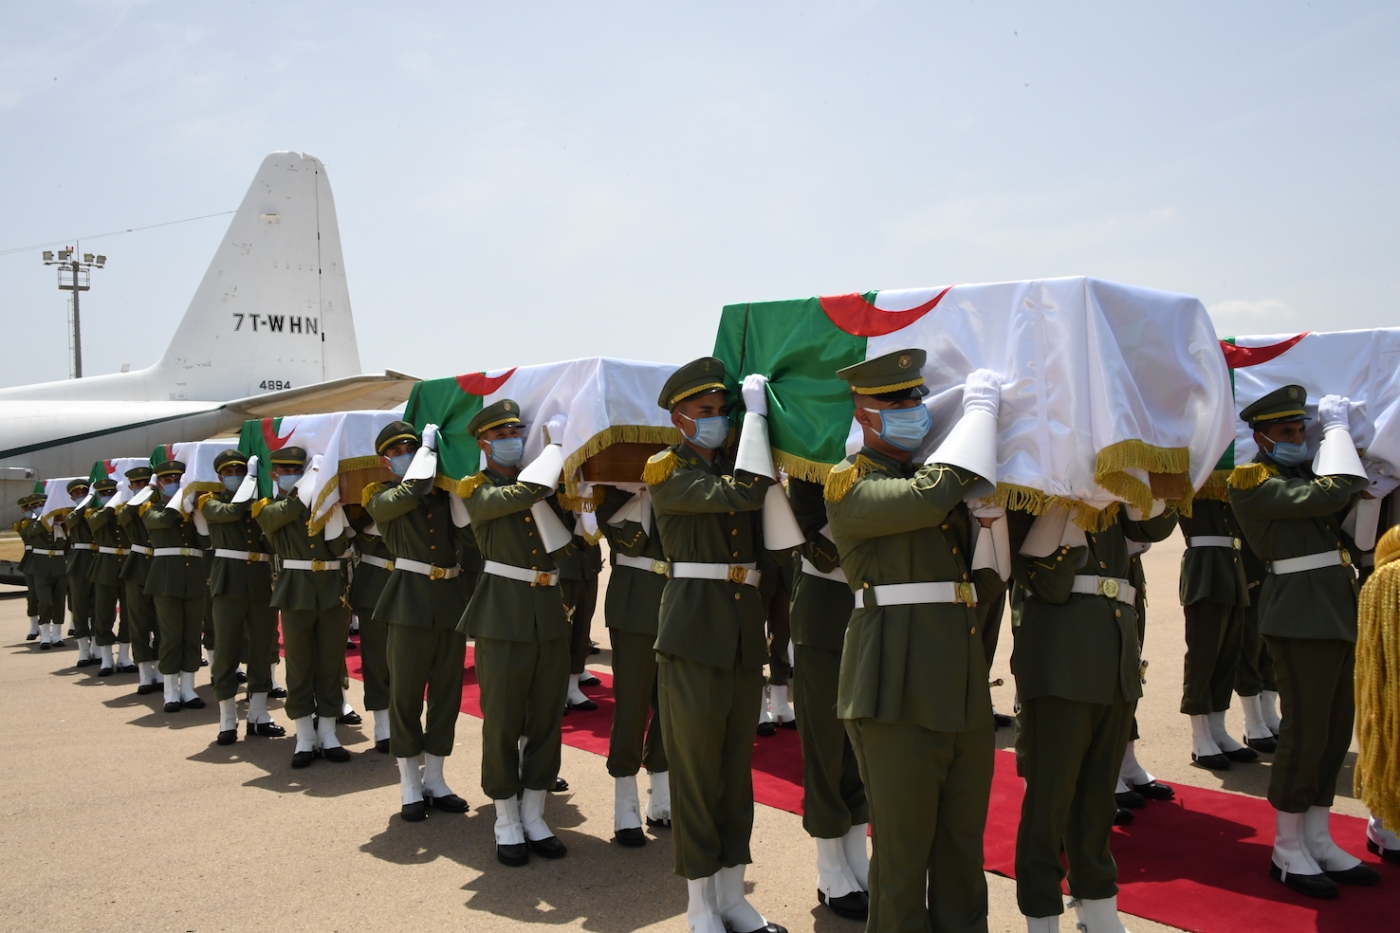 Les 24 cercueils à leur arrivée à l’aéroport d’Alger vendredi 3 juillet (Présidence algérienne)